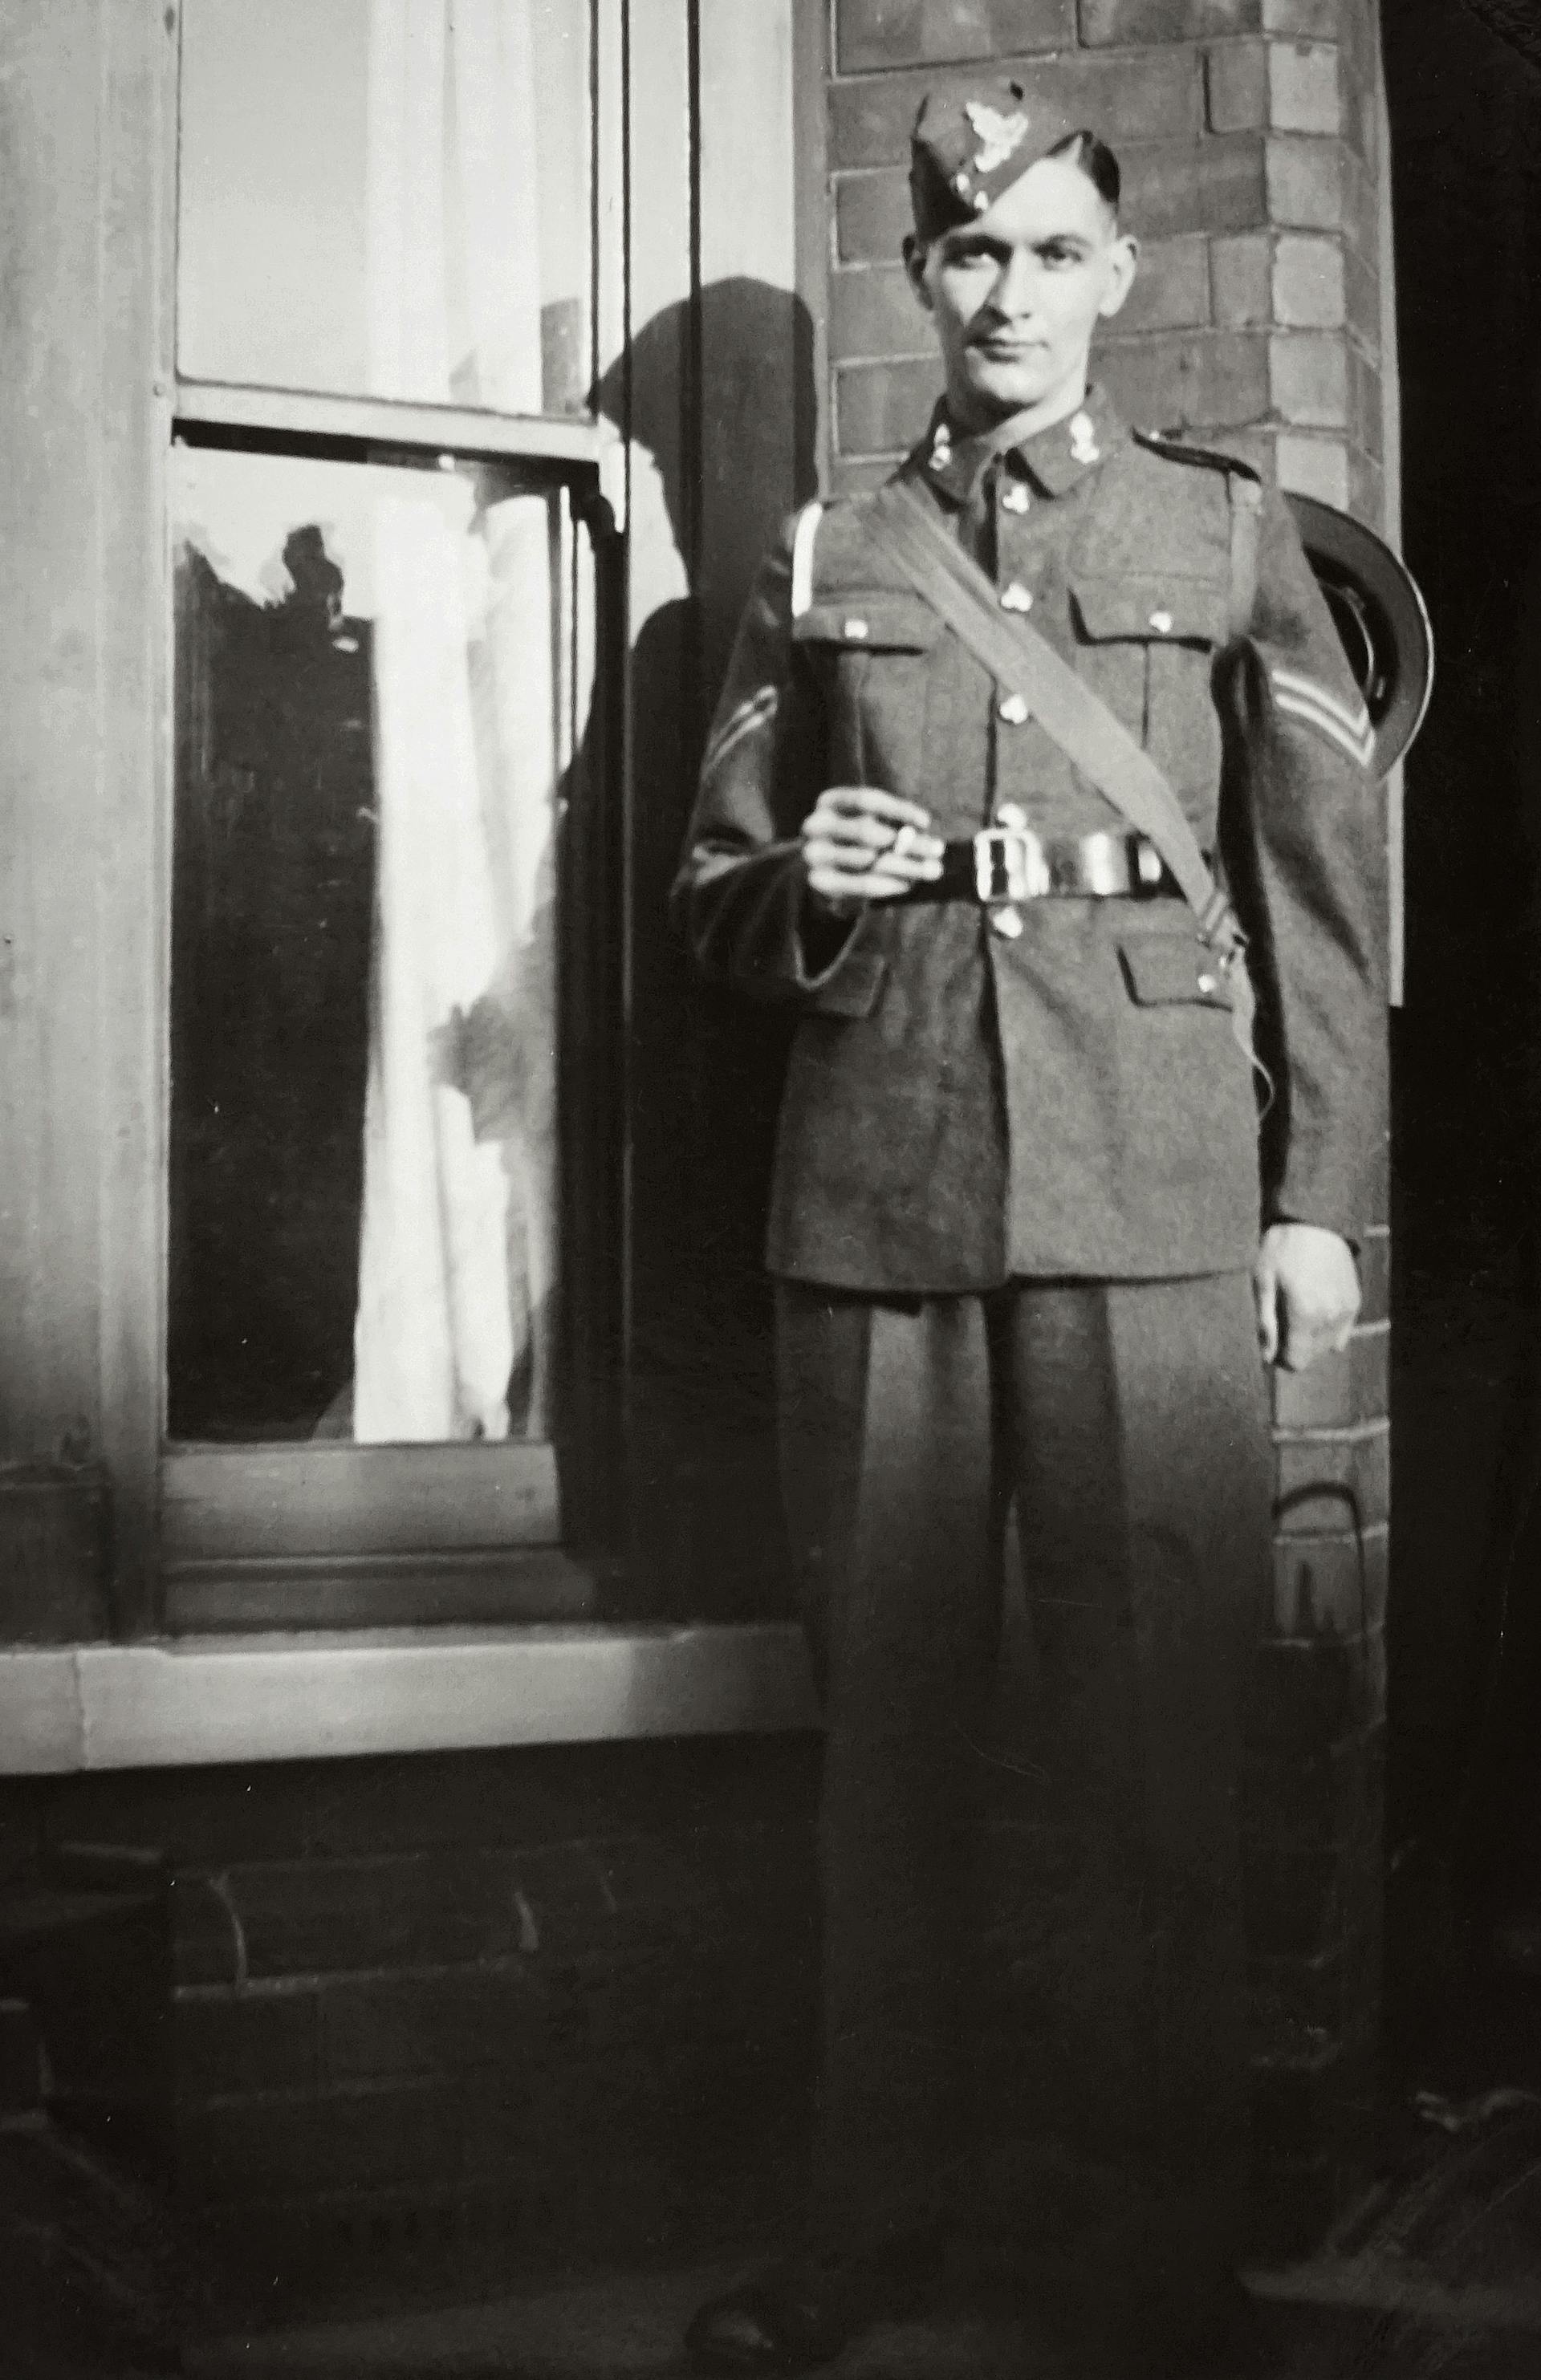 Ein altes Foto von einem jungen Soldaten | Quelle: Pexels